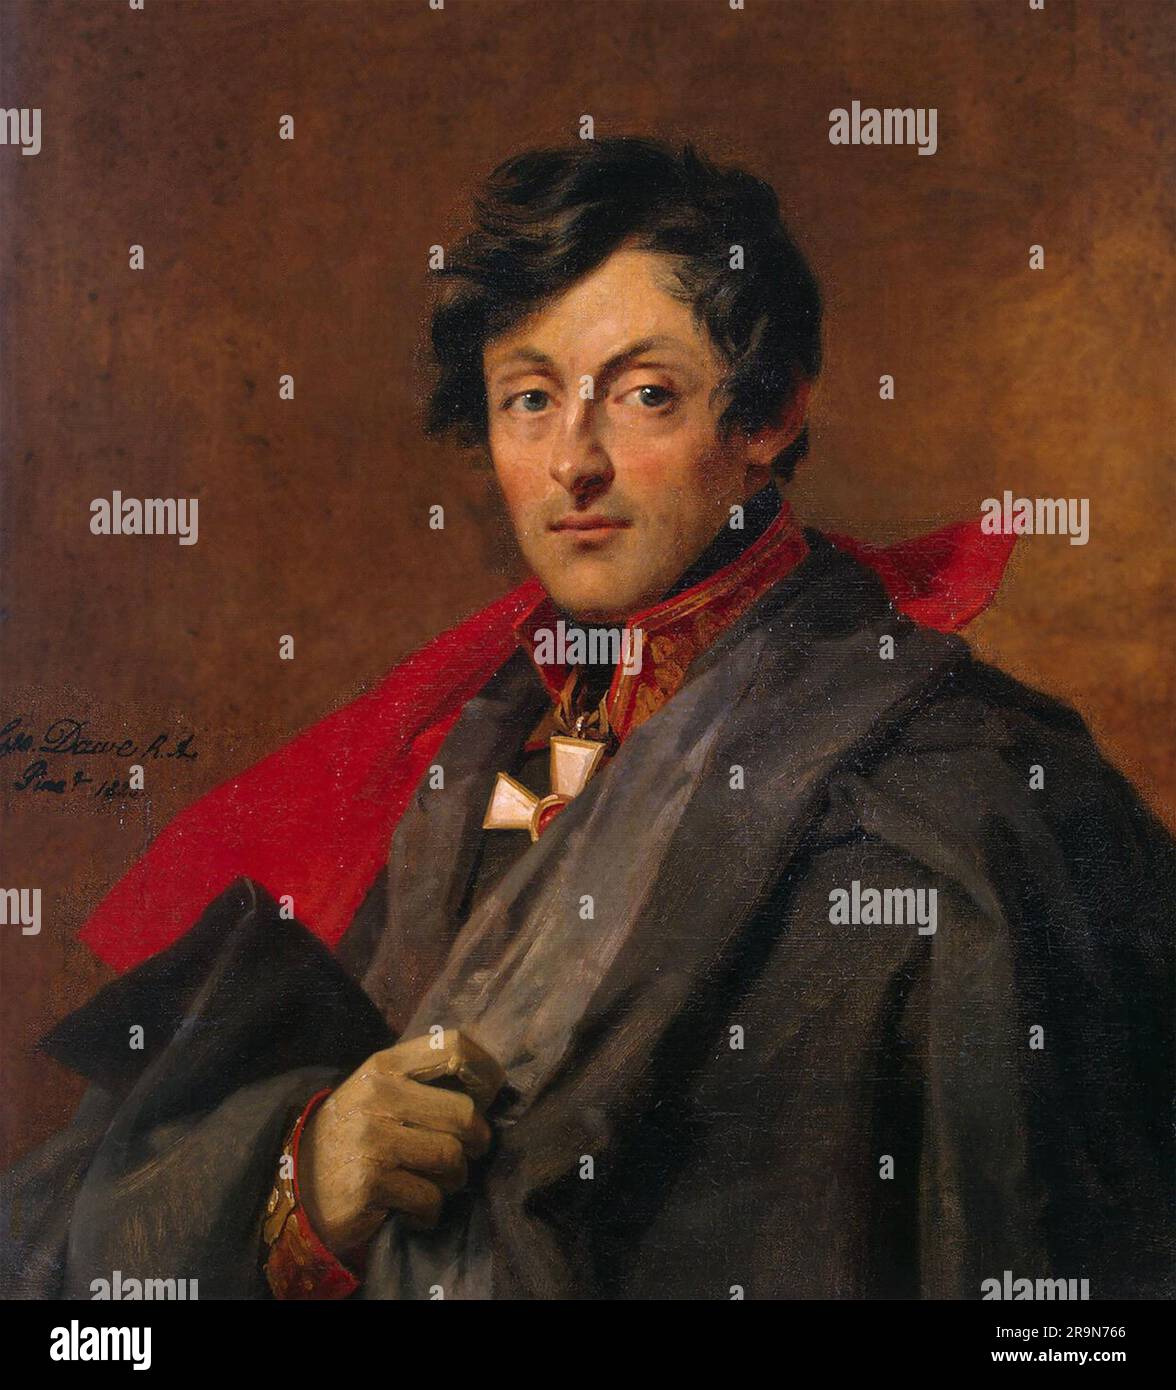 EL CONDE ALEXANDER IVANOVICH OSTERMANN-TOLSTOY (1770-1857) oficial del ejército ruso en una pintura de 1825 de George Dawe Foto de stock